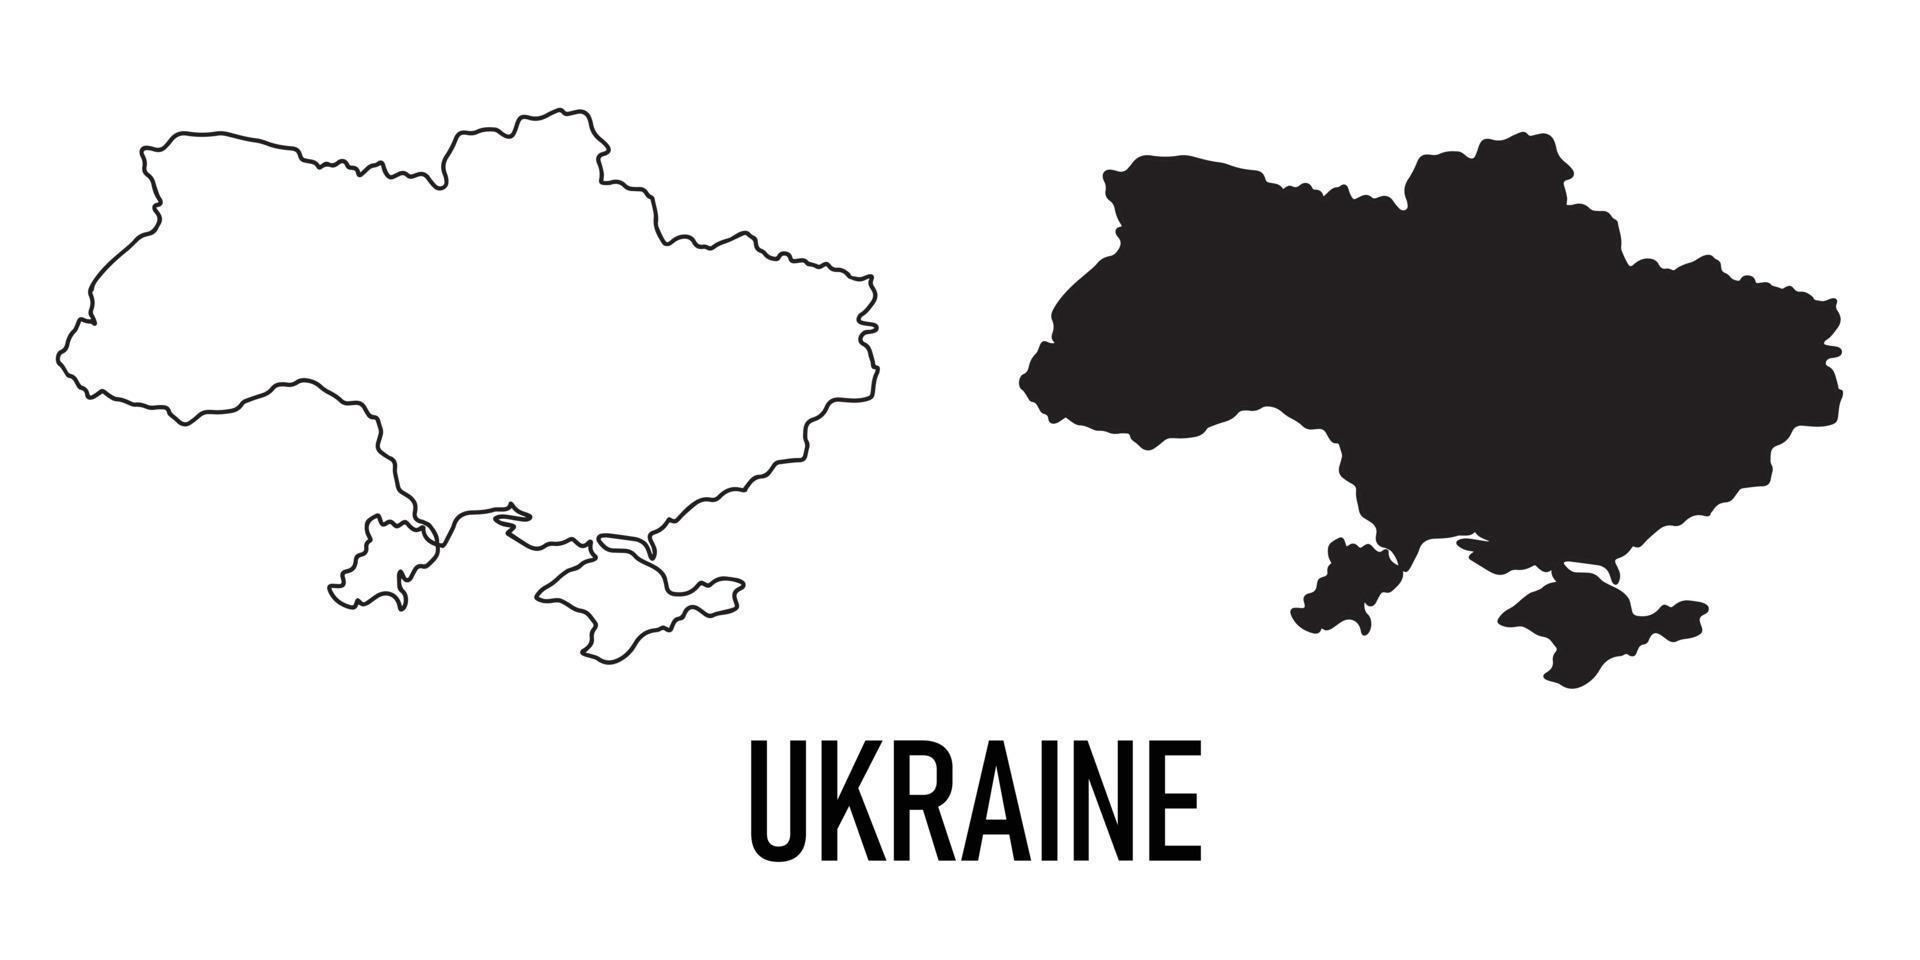 karte der ukraine - einfache handgezeichnete skizzenart einzeilige umrisskonturkarte und schwarze silhouette. vektorillustration lokalisiert auf weiß. Silhouettenzeichnung der ukrainischen Grenze. vektor